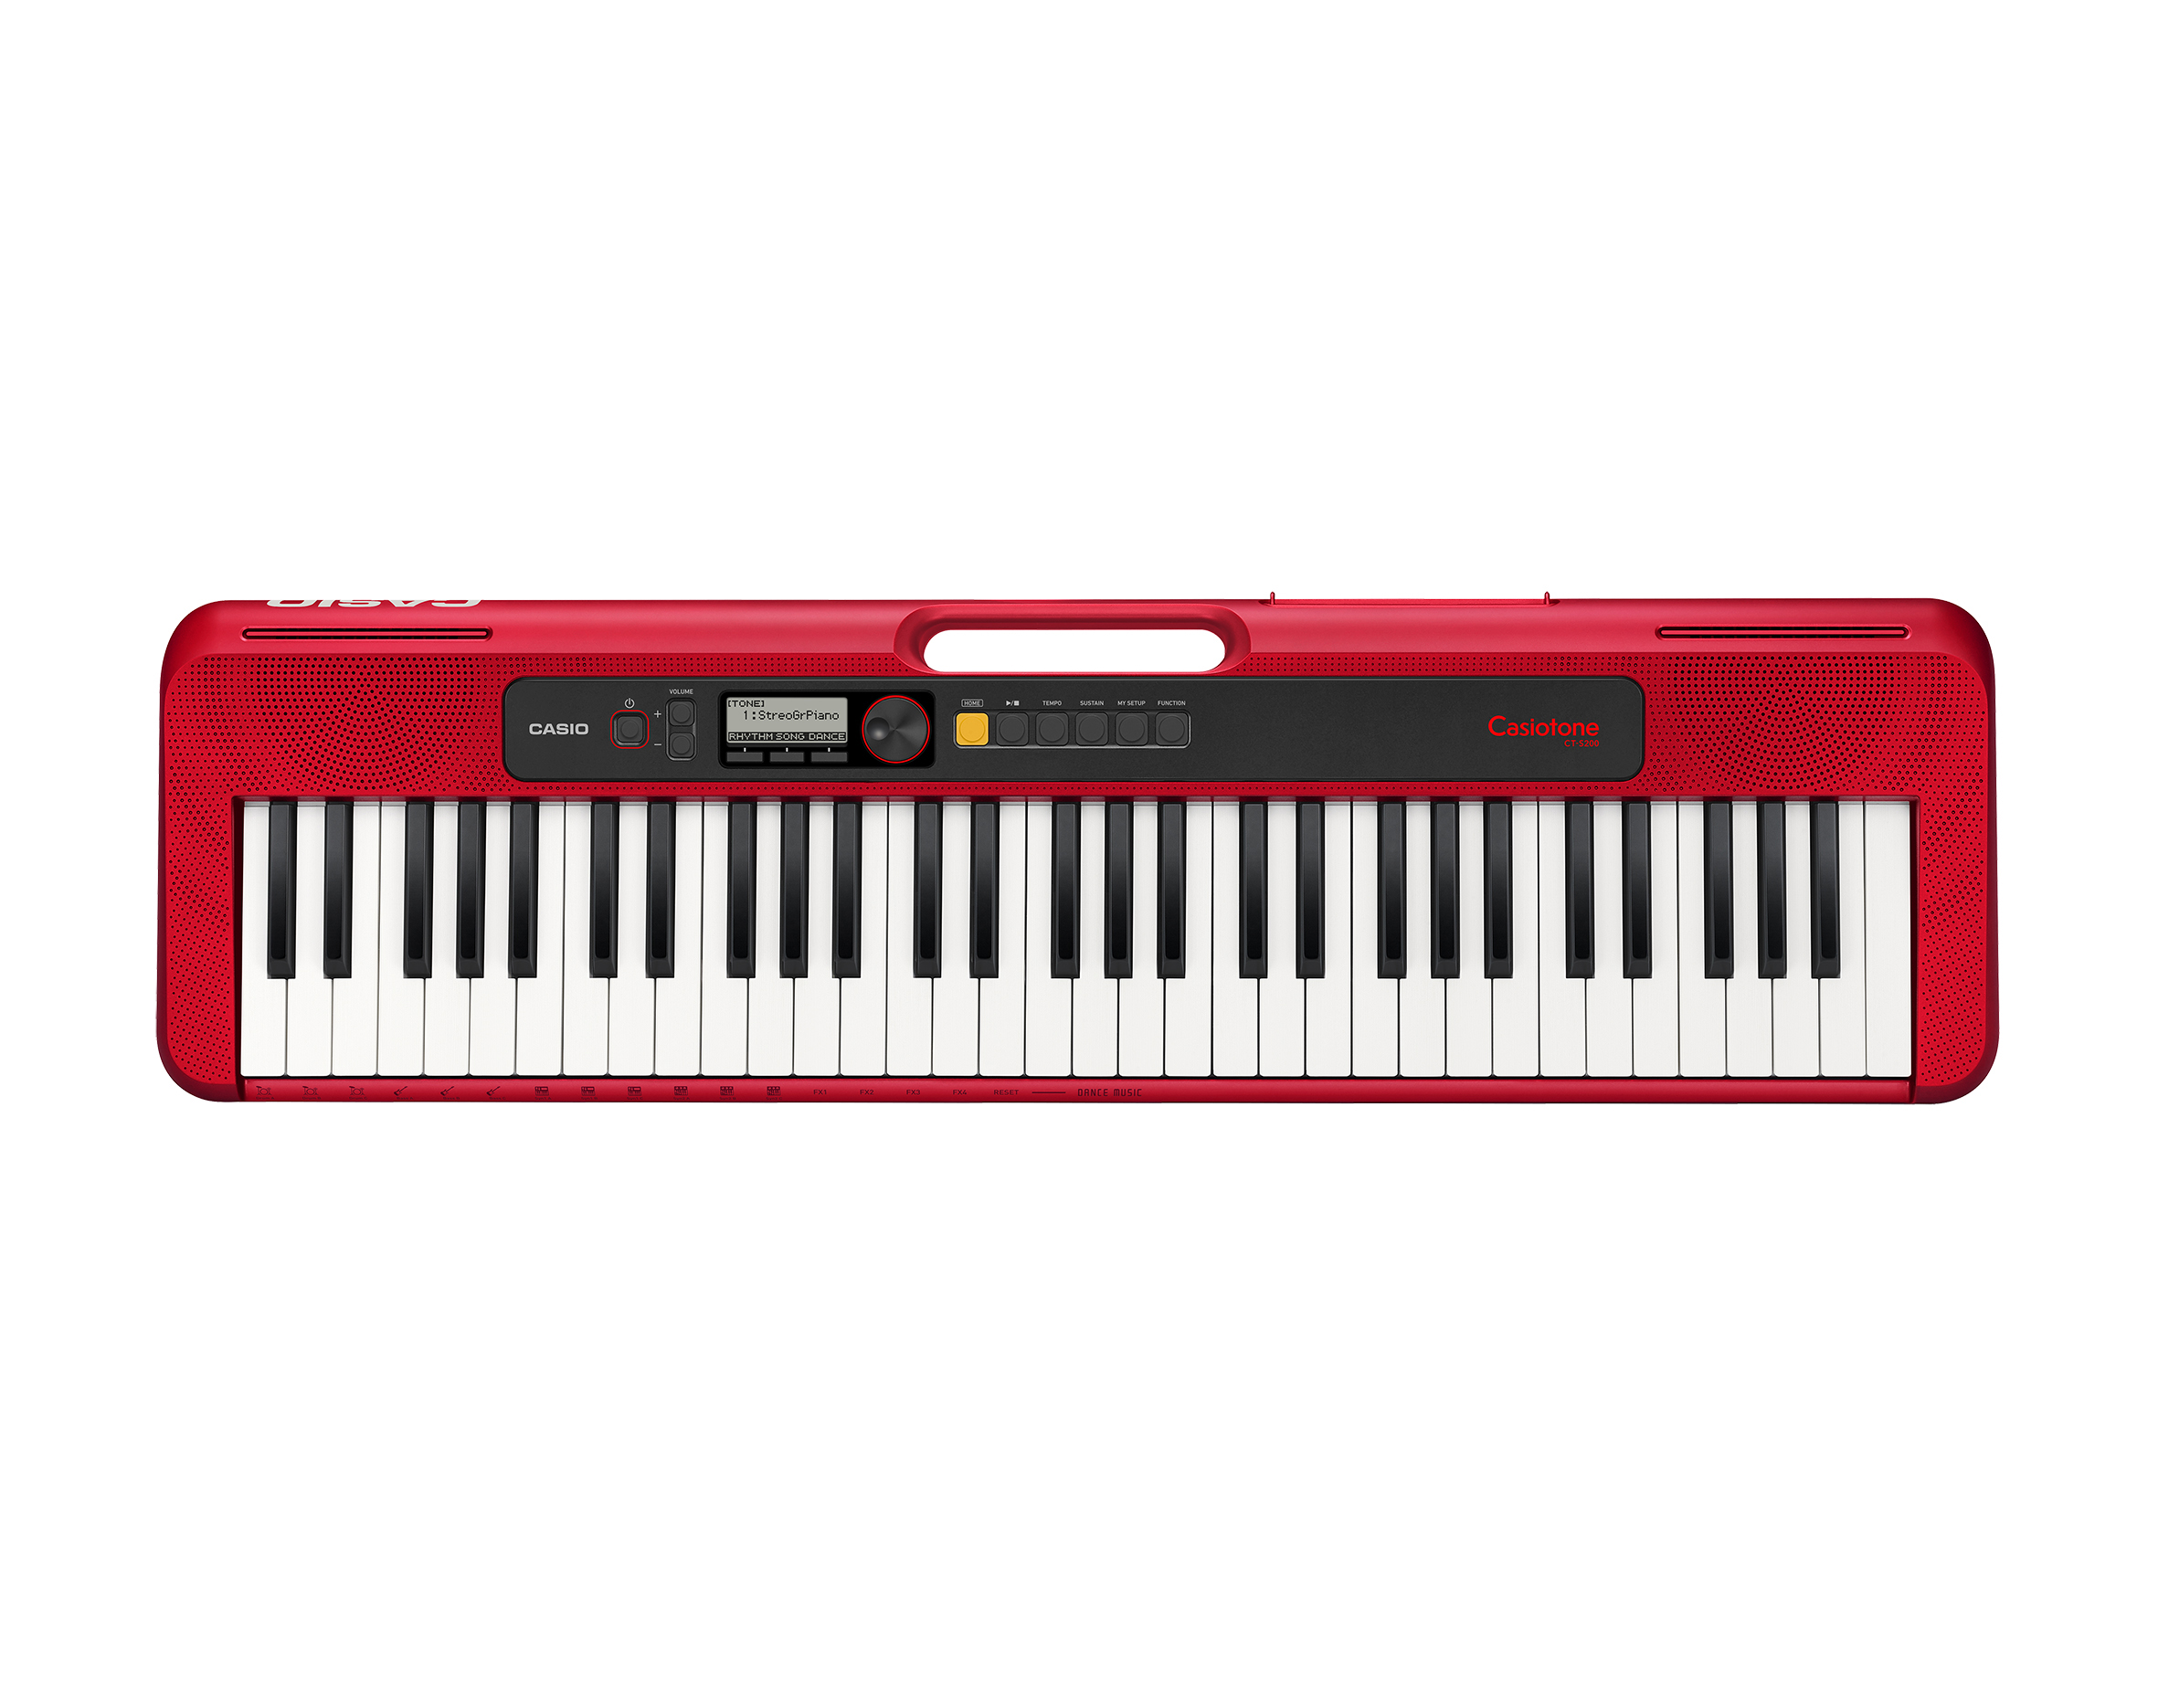 Køb Casio CT-S200 Keyboard - Rød - Pris 1079.00 kr.